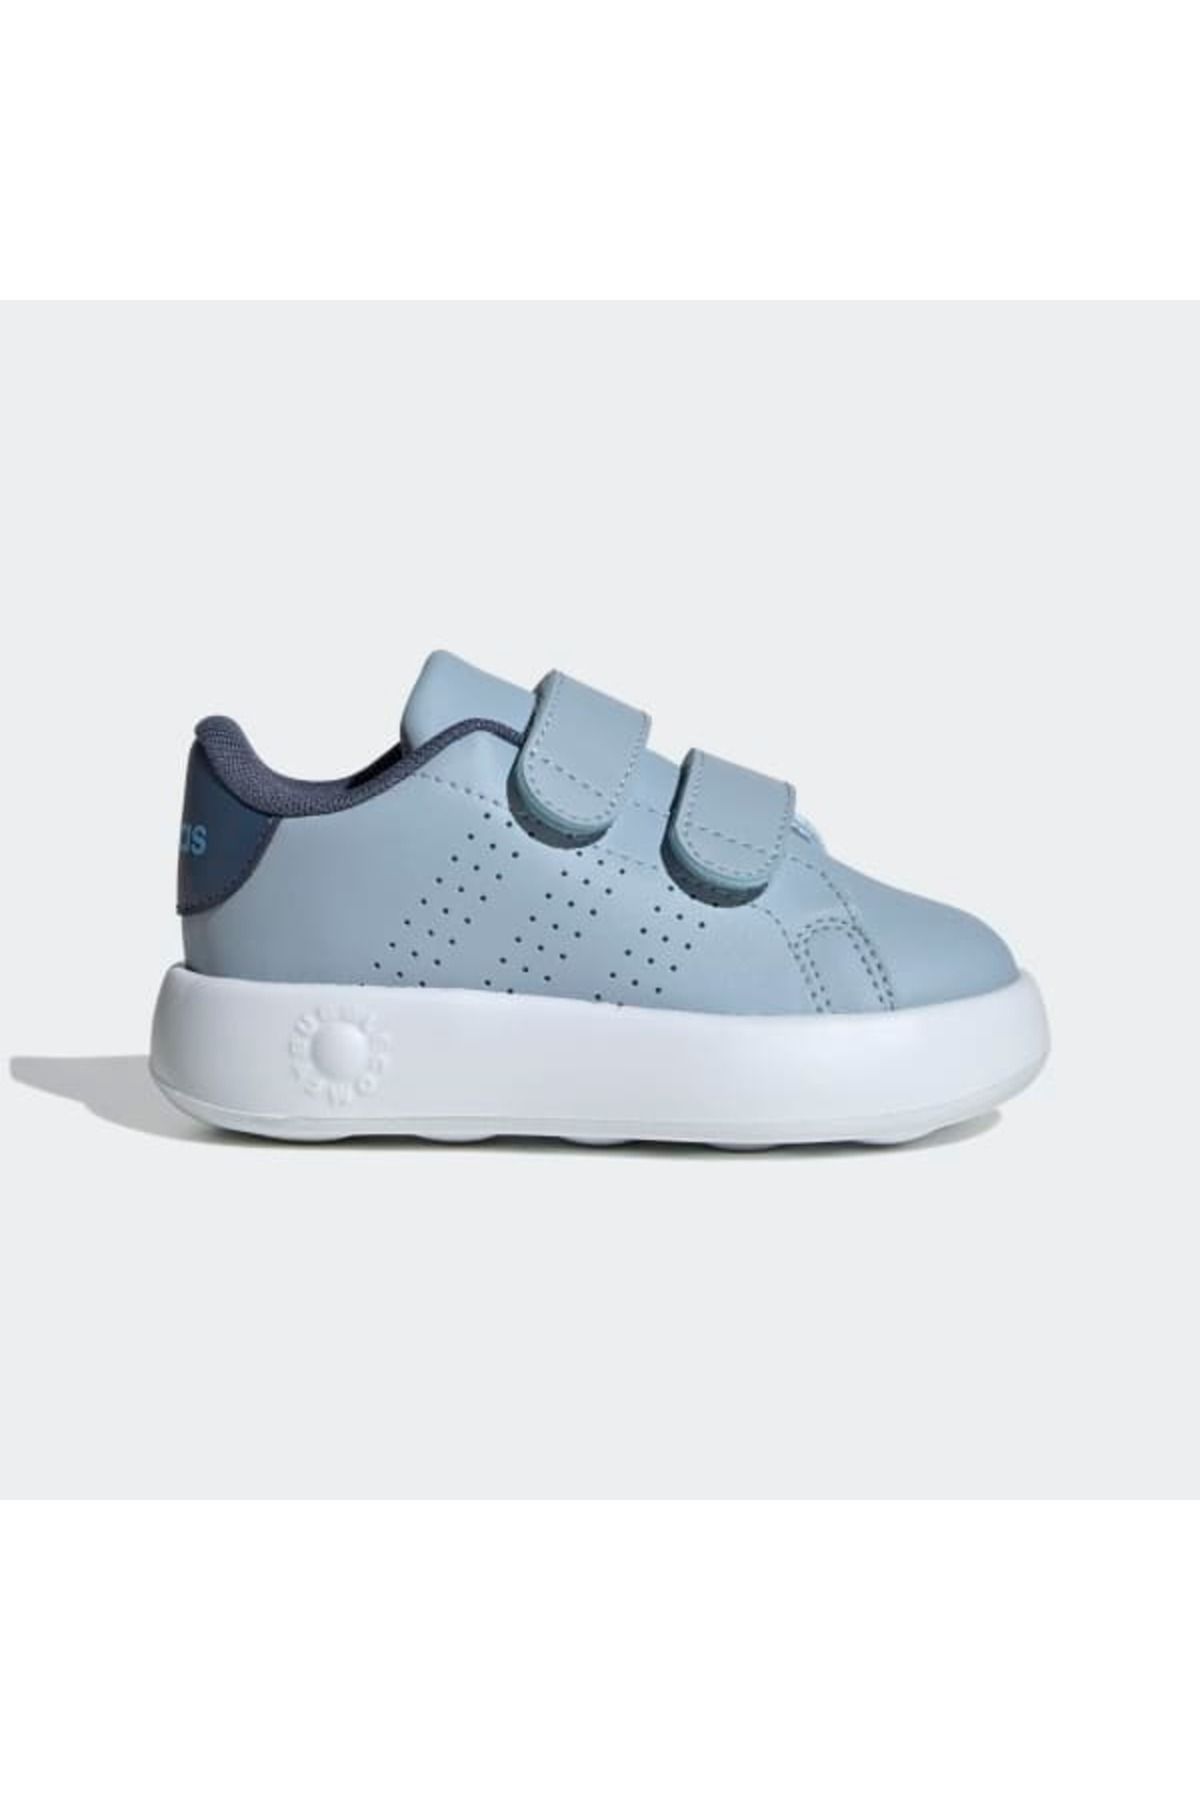 adidas Çocuk Bebek Günlük Yürüyüş Ayakkabısı Advantage Cf I Id0732